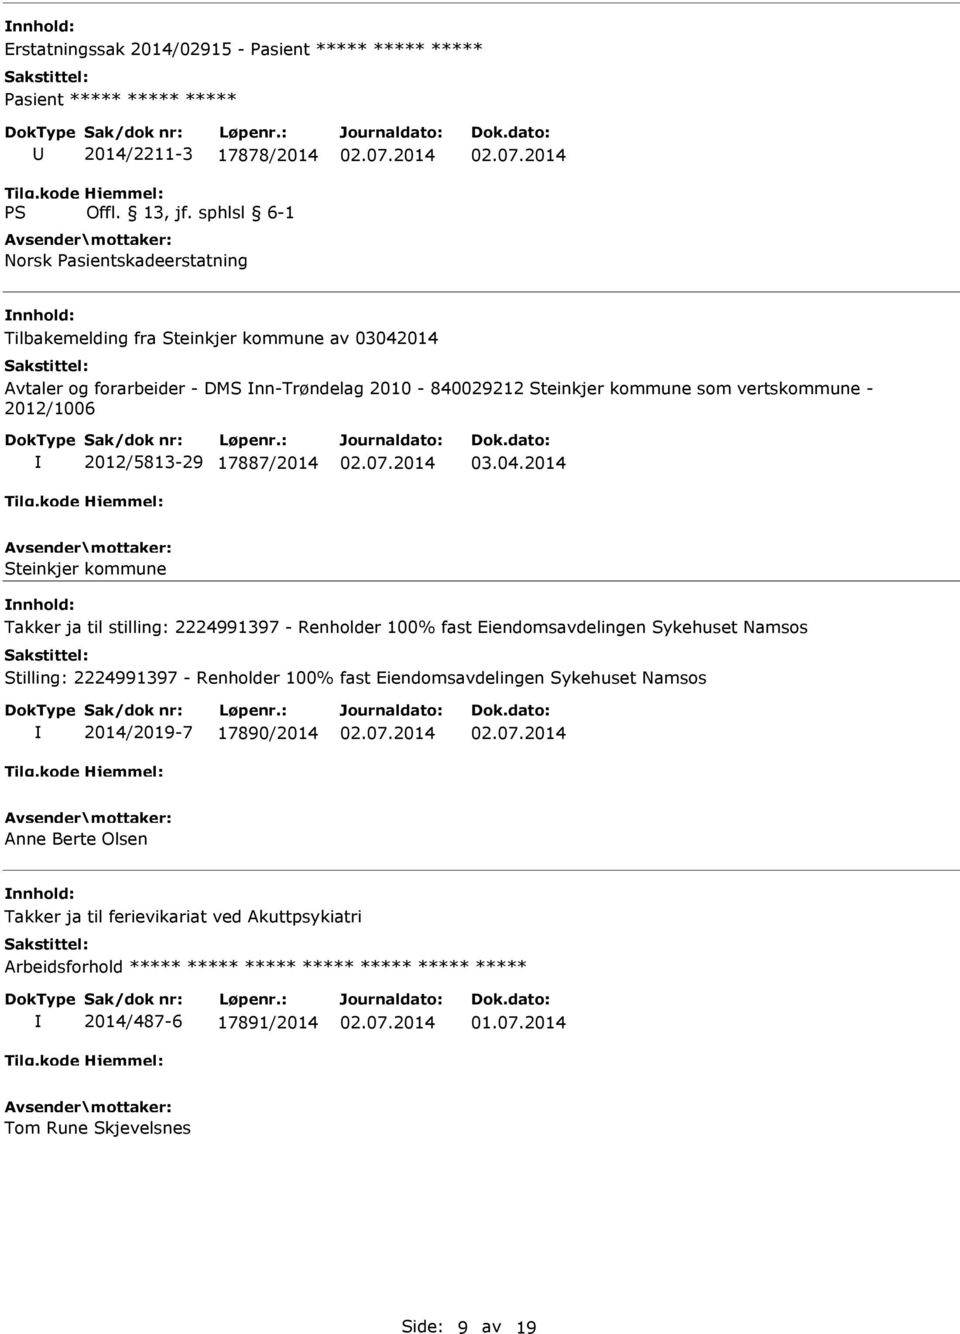 2014 Steinkjer kommune Takker ja til stilling: 2224991397 - Renholder 100% fast Eiendomsavdelingen Sykehuset Namsos Stilling: 2224991397 - Renholder 100% fast